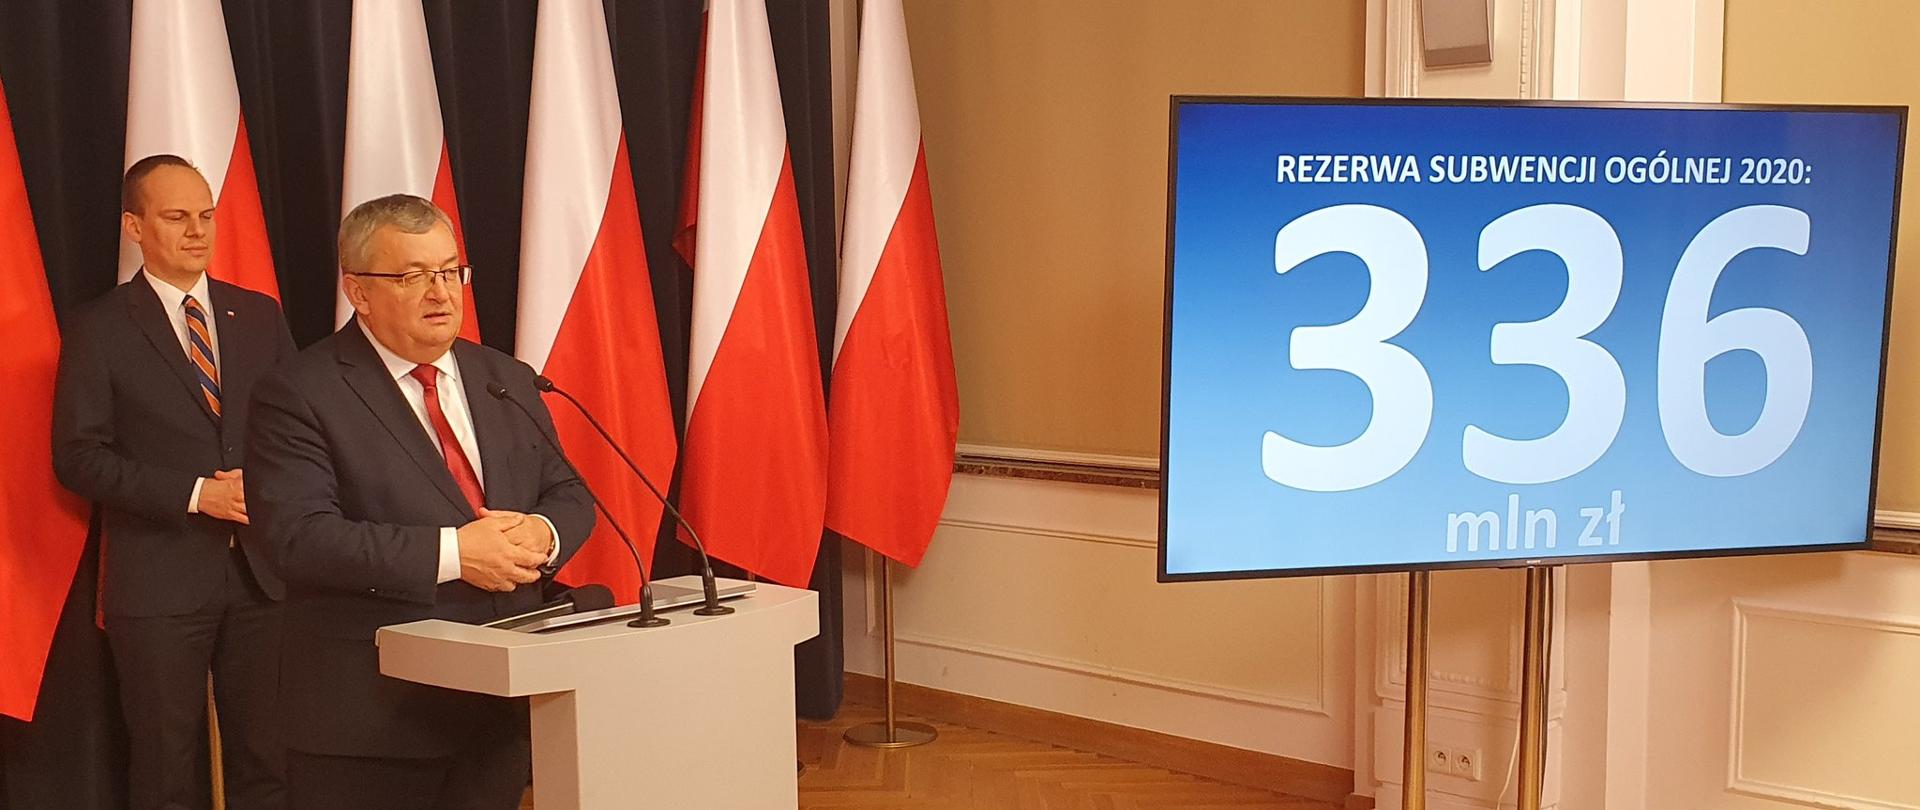 Minister infrastruktury Andrzej Adamczyk oraz wiceminister Rafał Weber poinformowali o podziale rezerwy subwencji ogólnej w 2020 roku